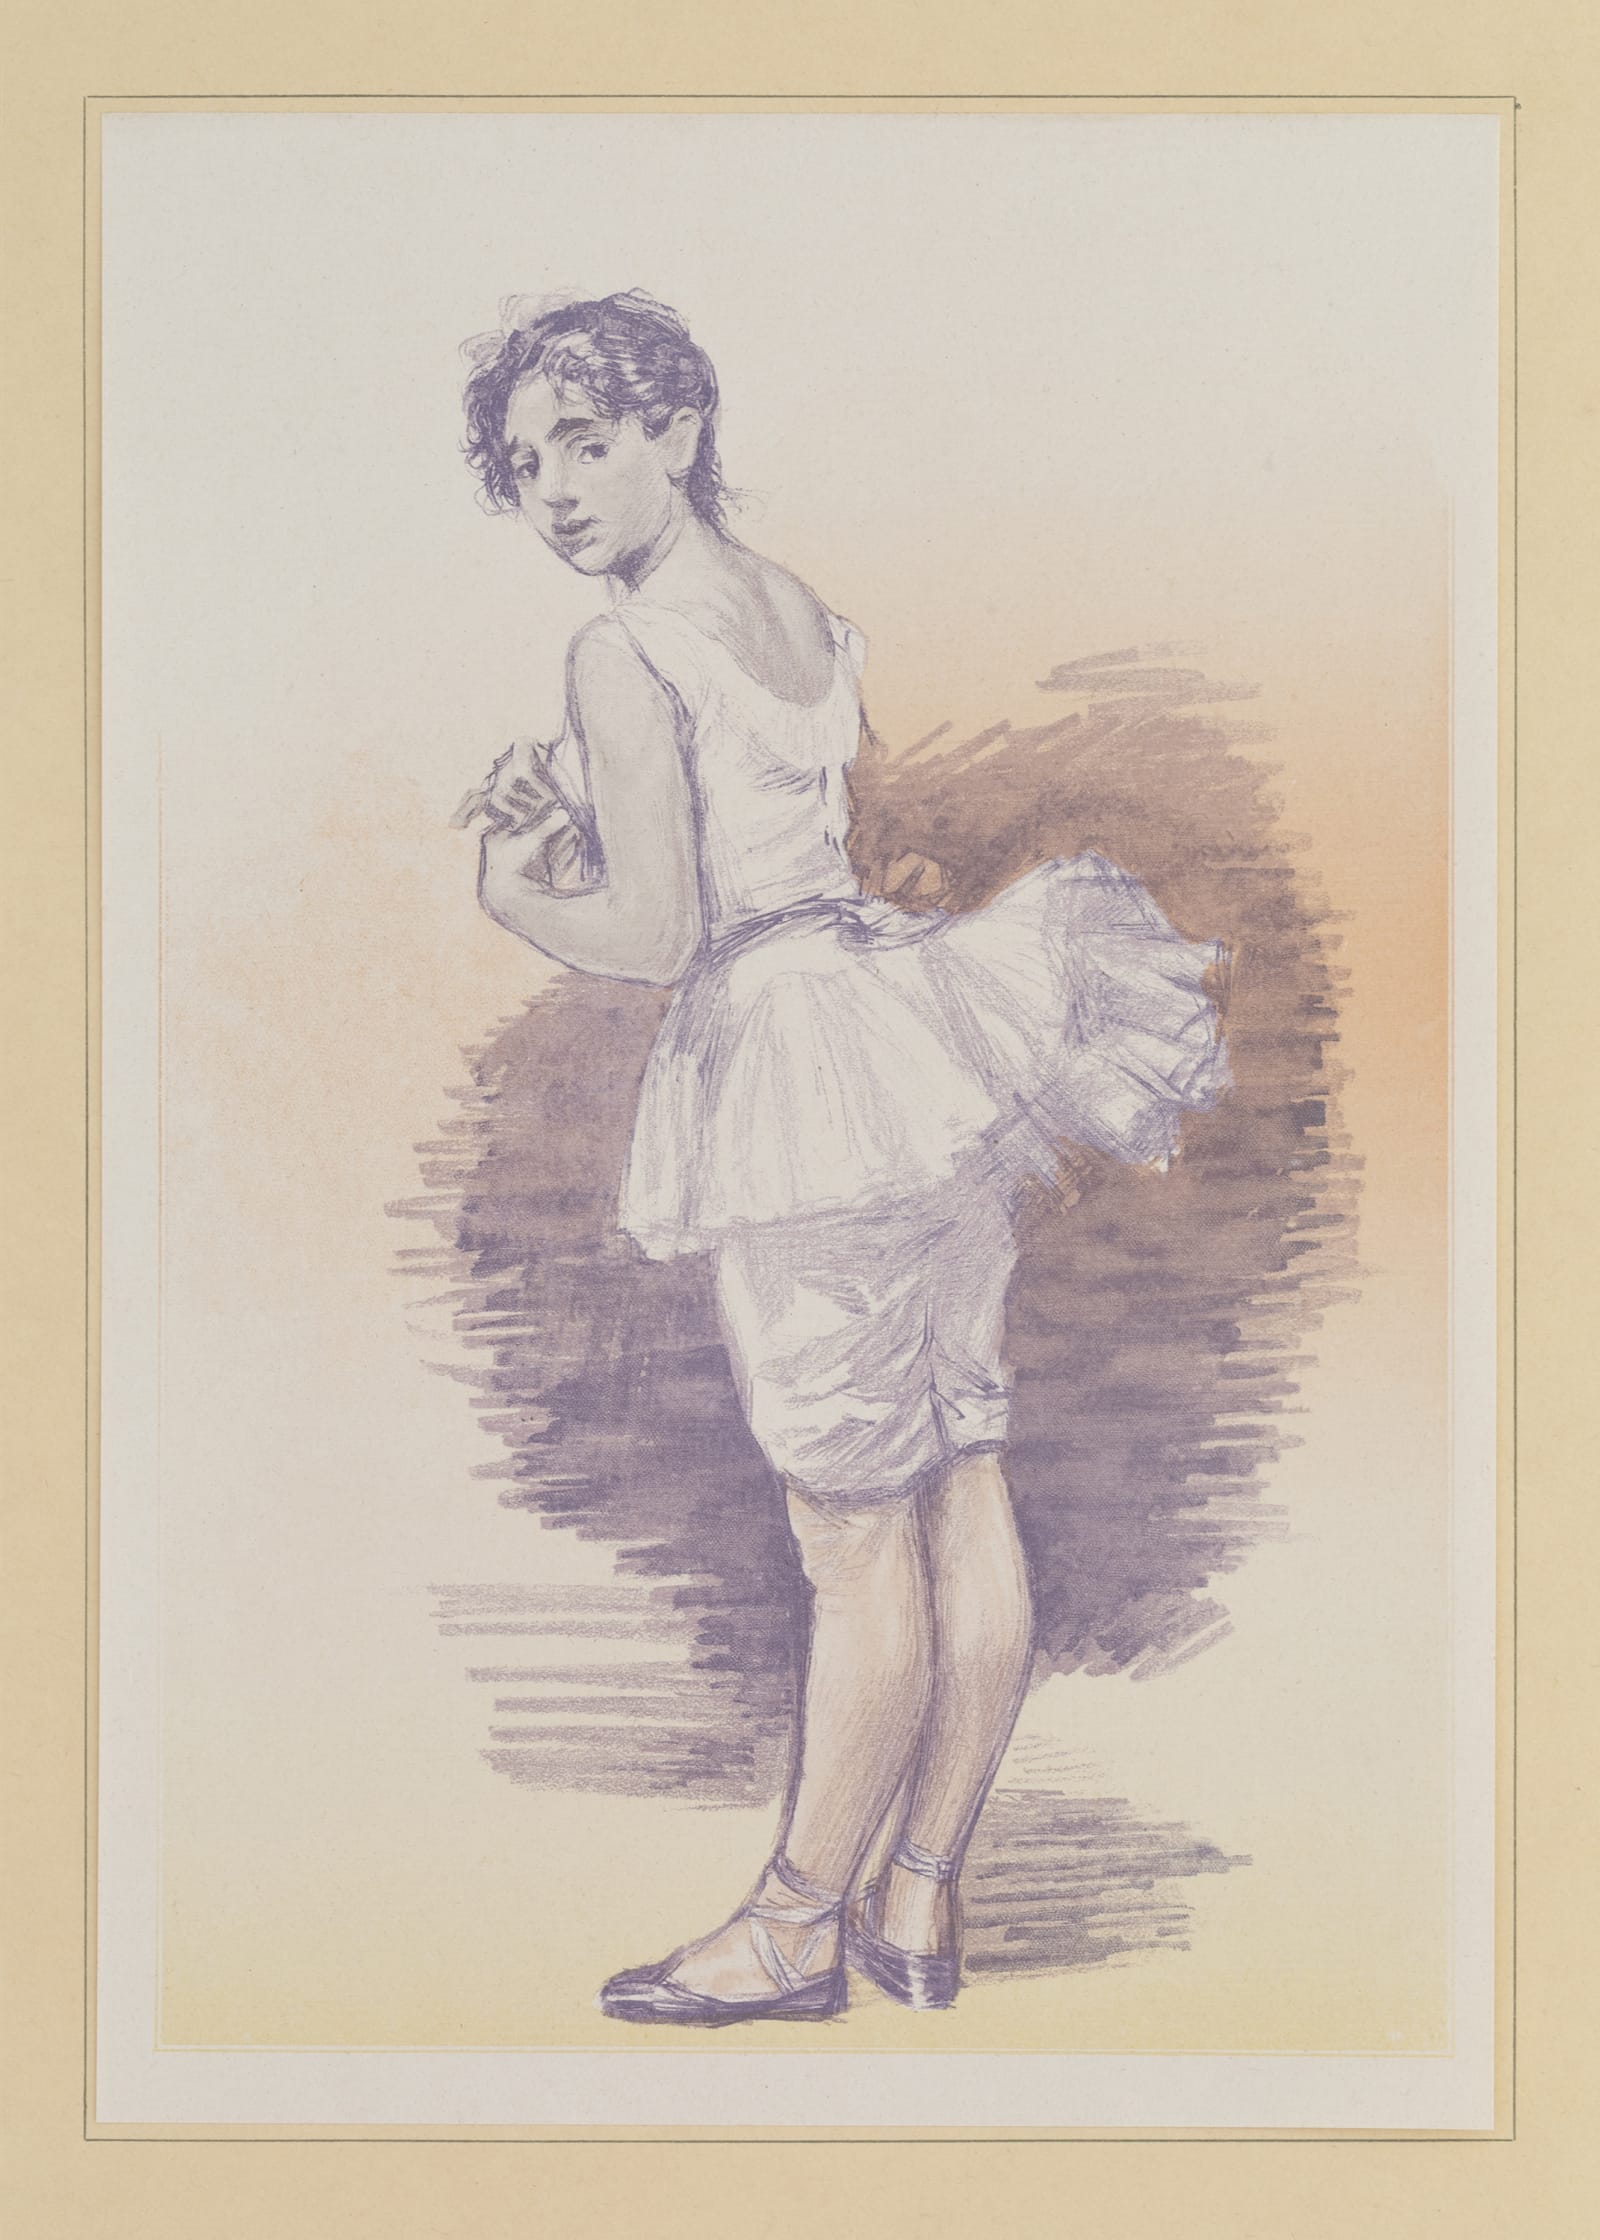 Paul Renouard, La danse, vingt dessins, Paris, Charles Gillot, 1892 © MCTS. Bibliothèque d’art et d’archéologie de Genève. Cote : BAA IC F 149 